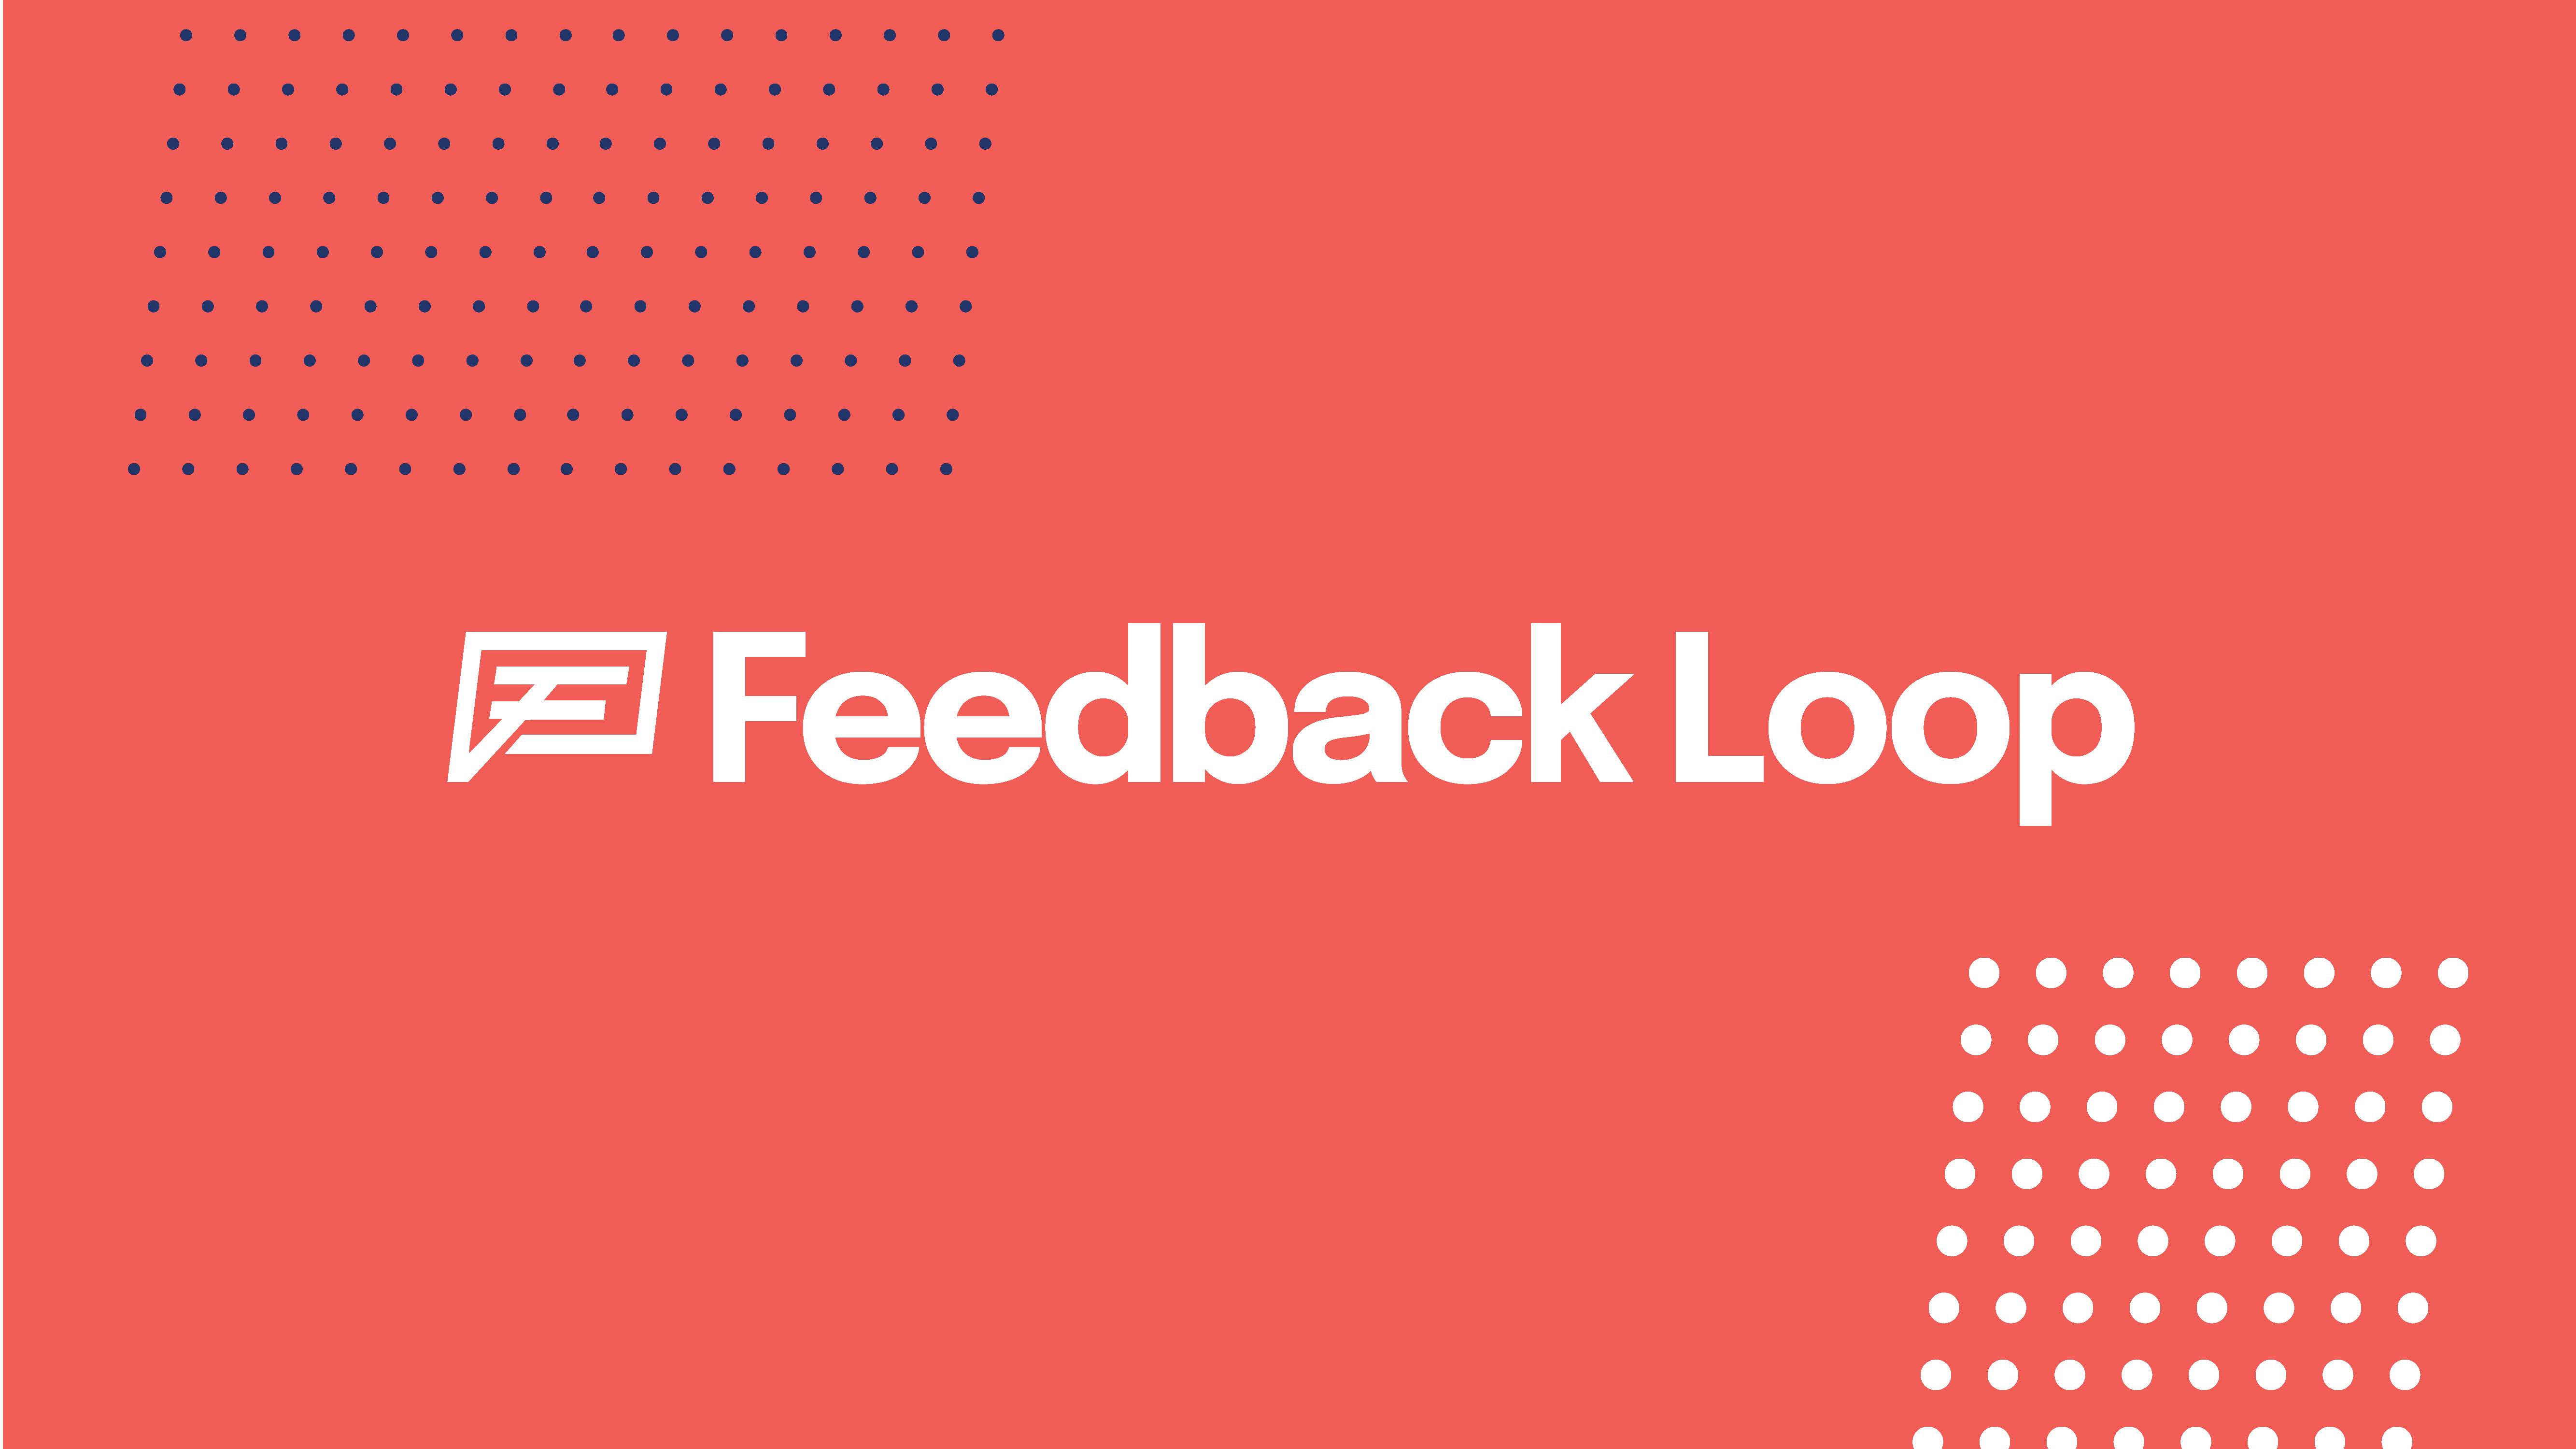 Feedback-Loop-Style-Frames_Page_17